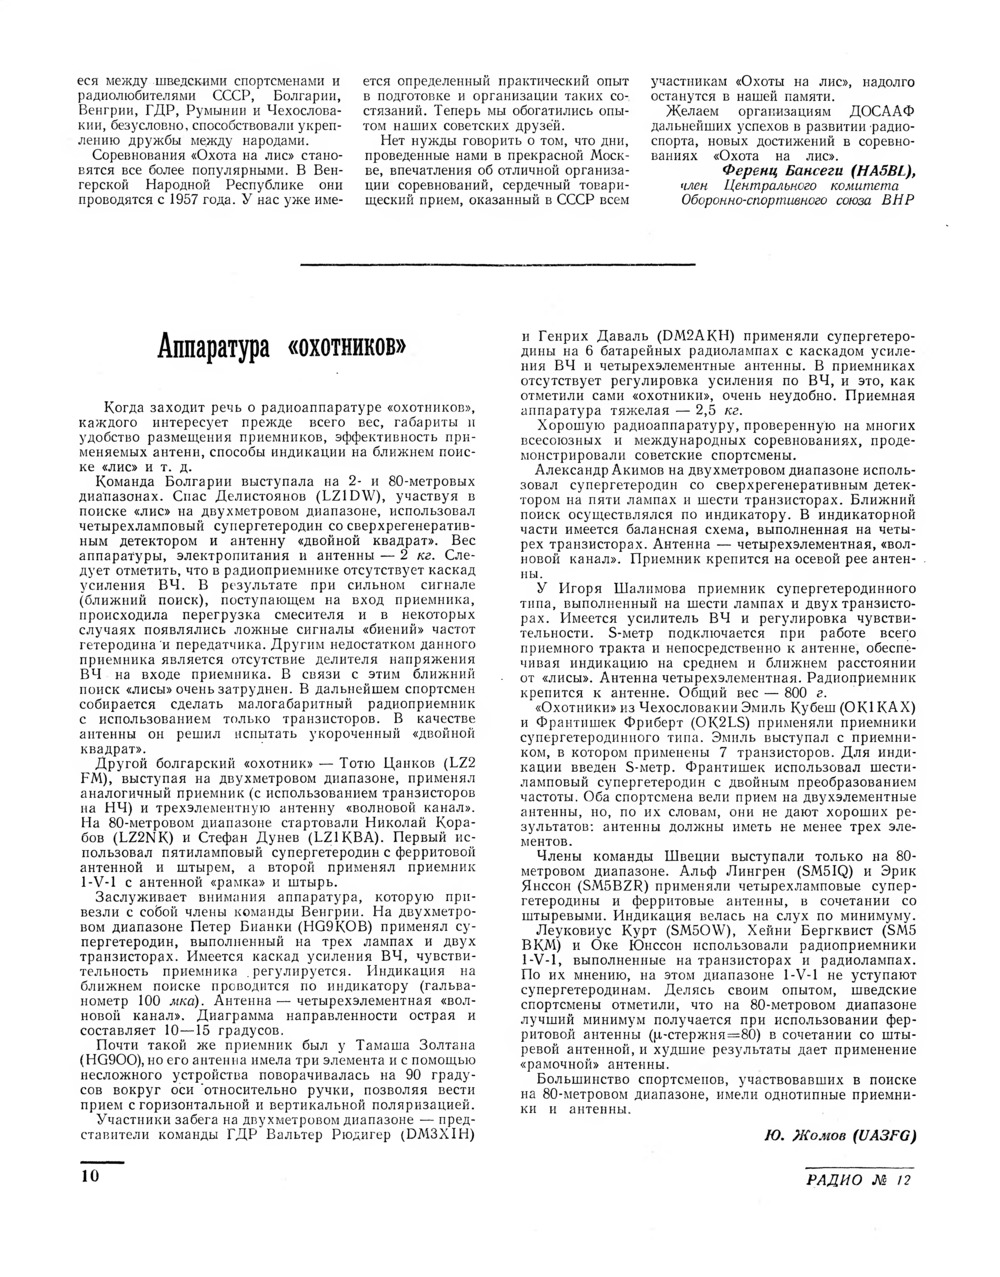 Стр. 10 журнала «Радио» № 12 за 1961 год